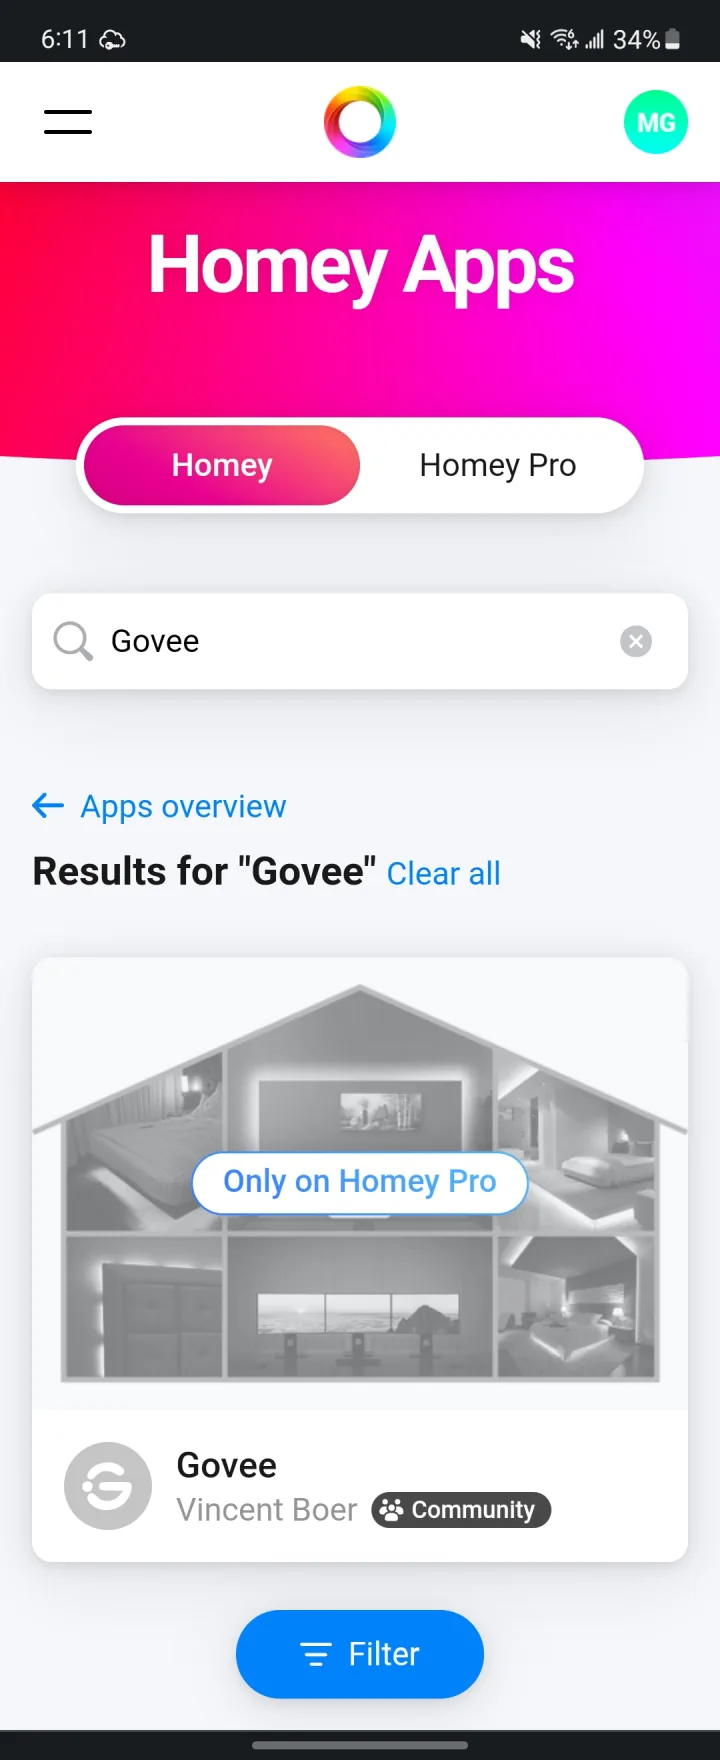 Homey Bridge App - Showcase 004